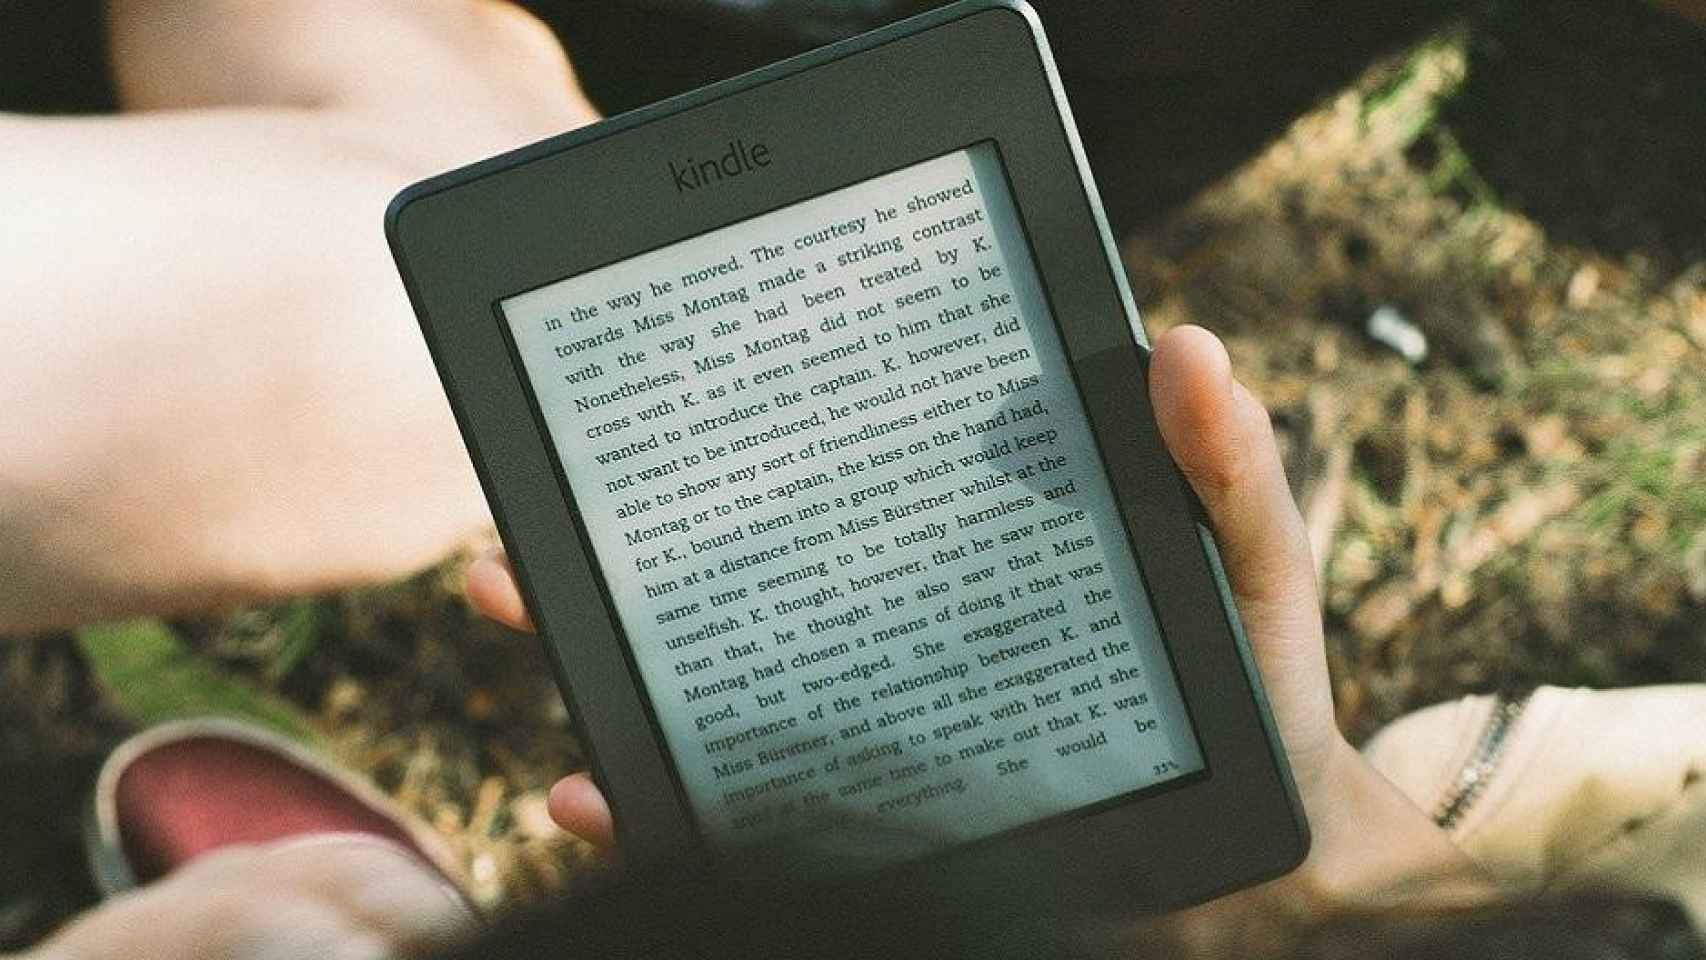 Chica leyendo en un Kindle, la plataforma que da visibilidad al Premio Literario de Amazon / Free-PhotosEN PIXABAY